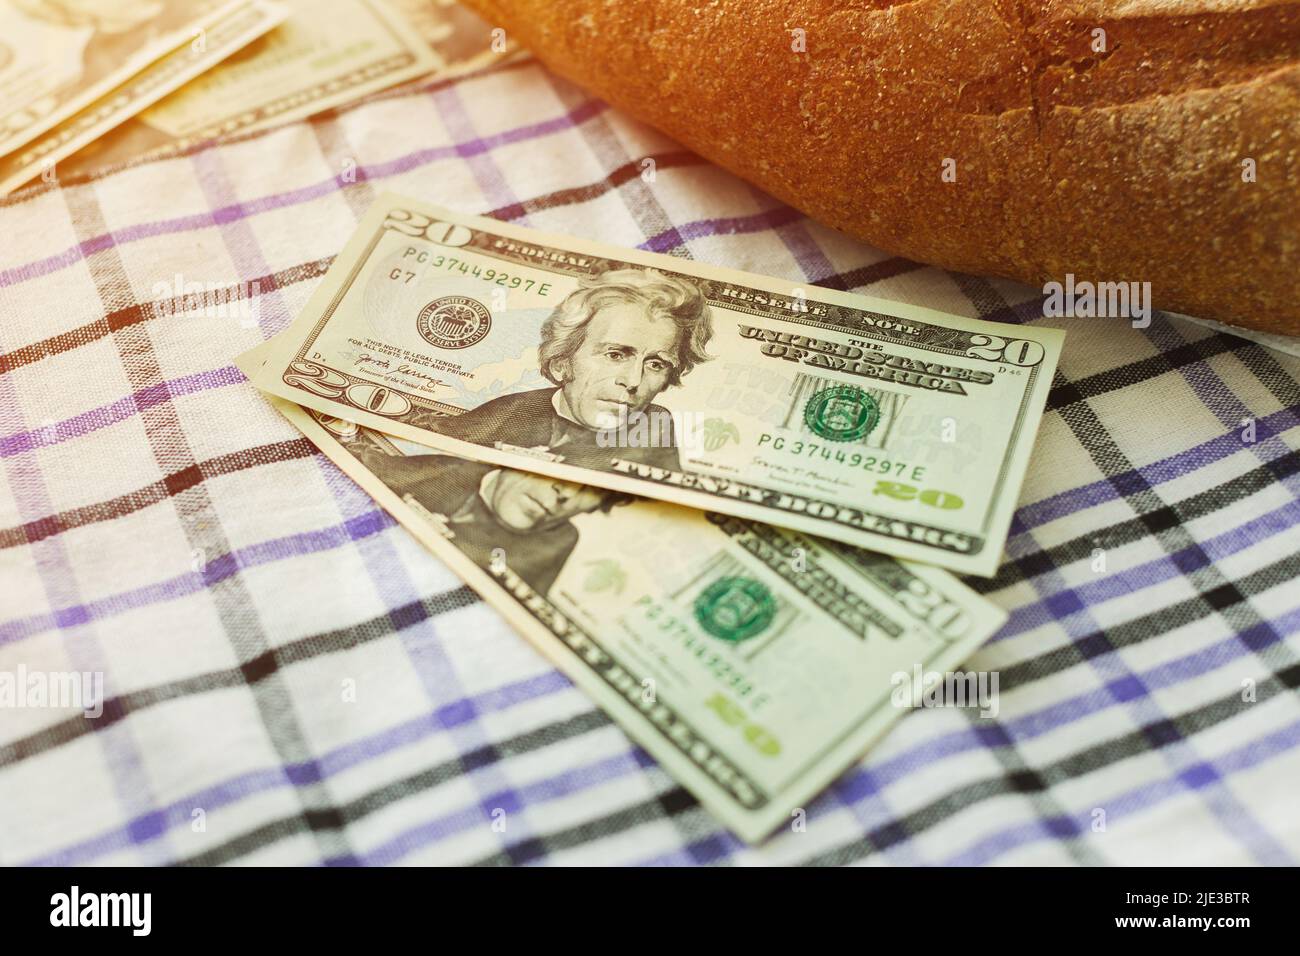 Zwei 20-Dollar-Scheine neben frischem Brot auf dem Tisch. Konzept für die Nahrungsmittelkrise der Welt. Stockfoto